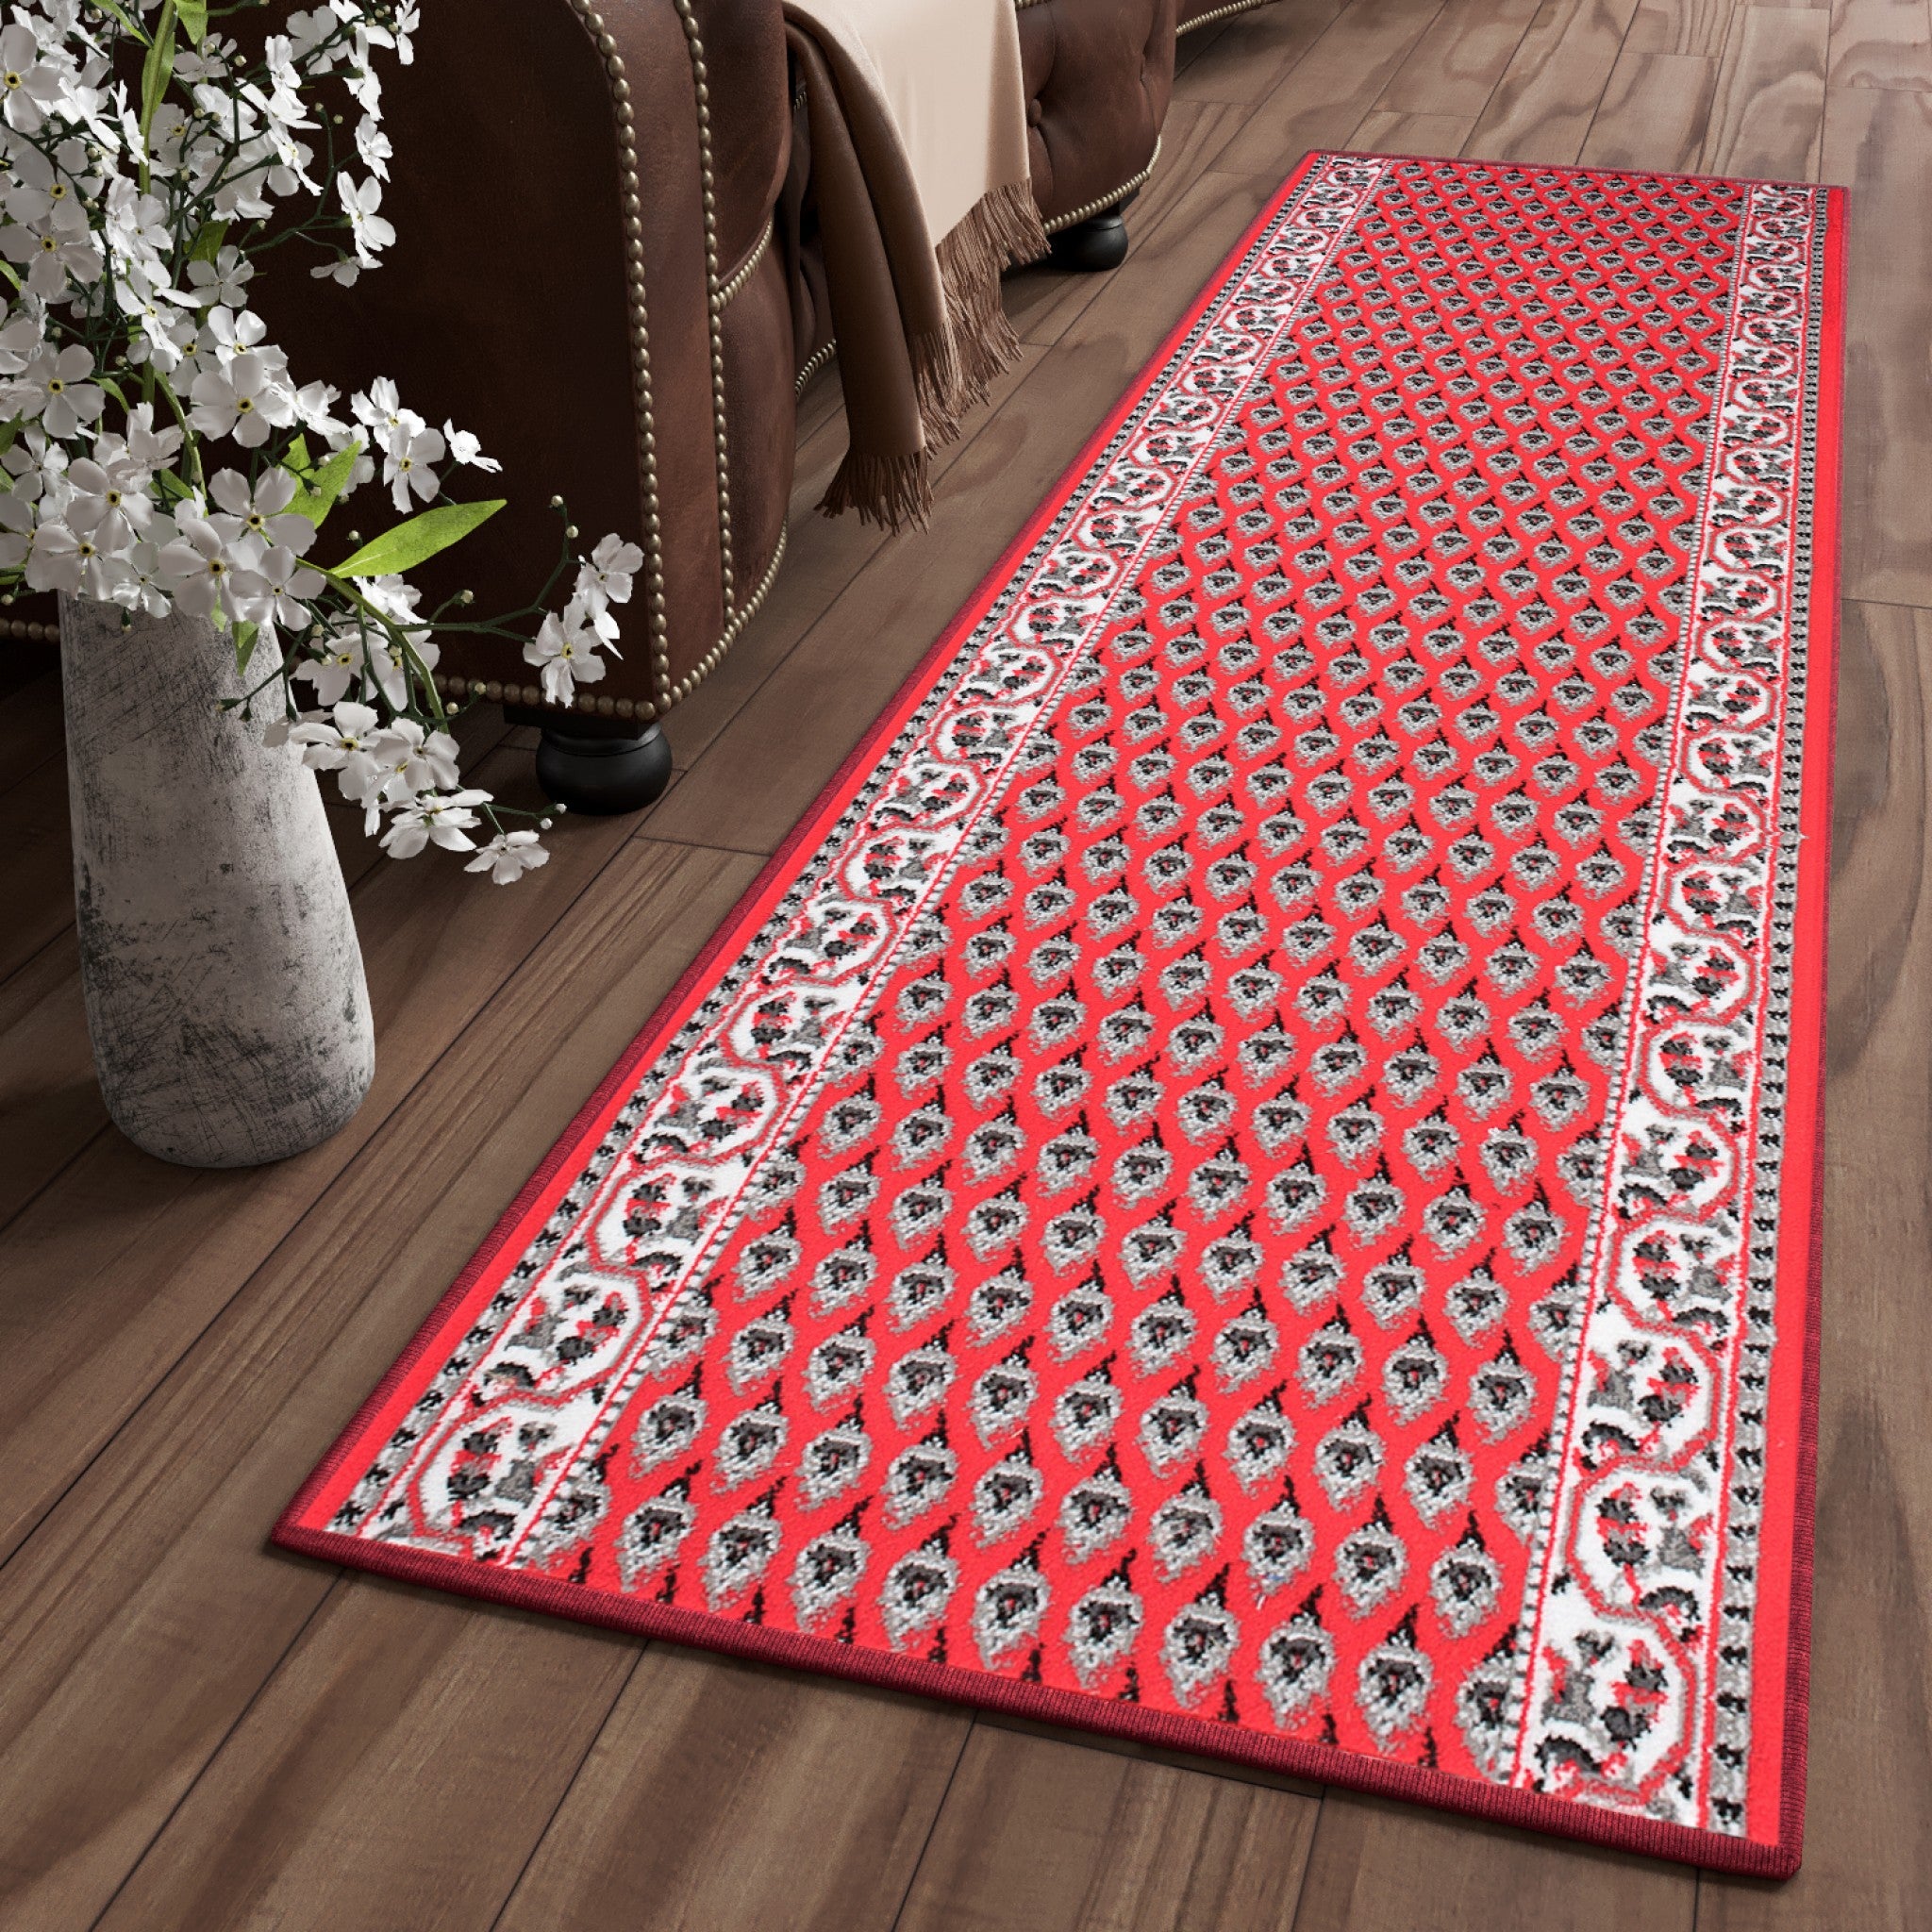 Vuela esta alfombra de Leroy Merlin por solo 20 euros: el chollo de la  temporada